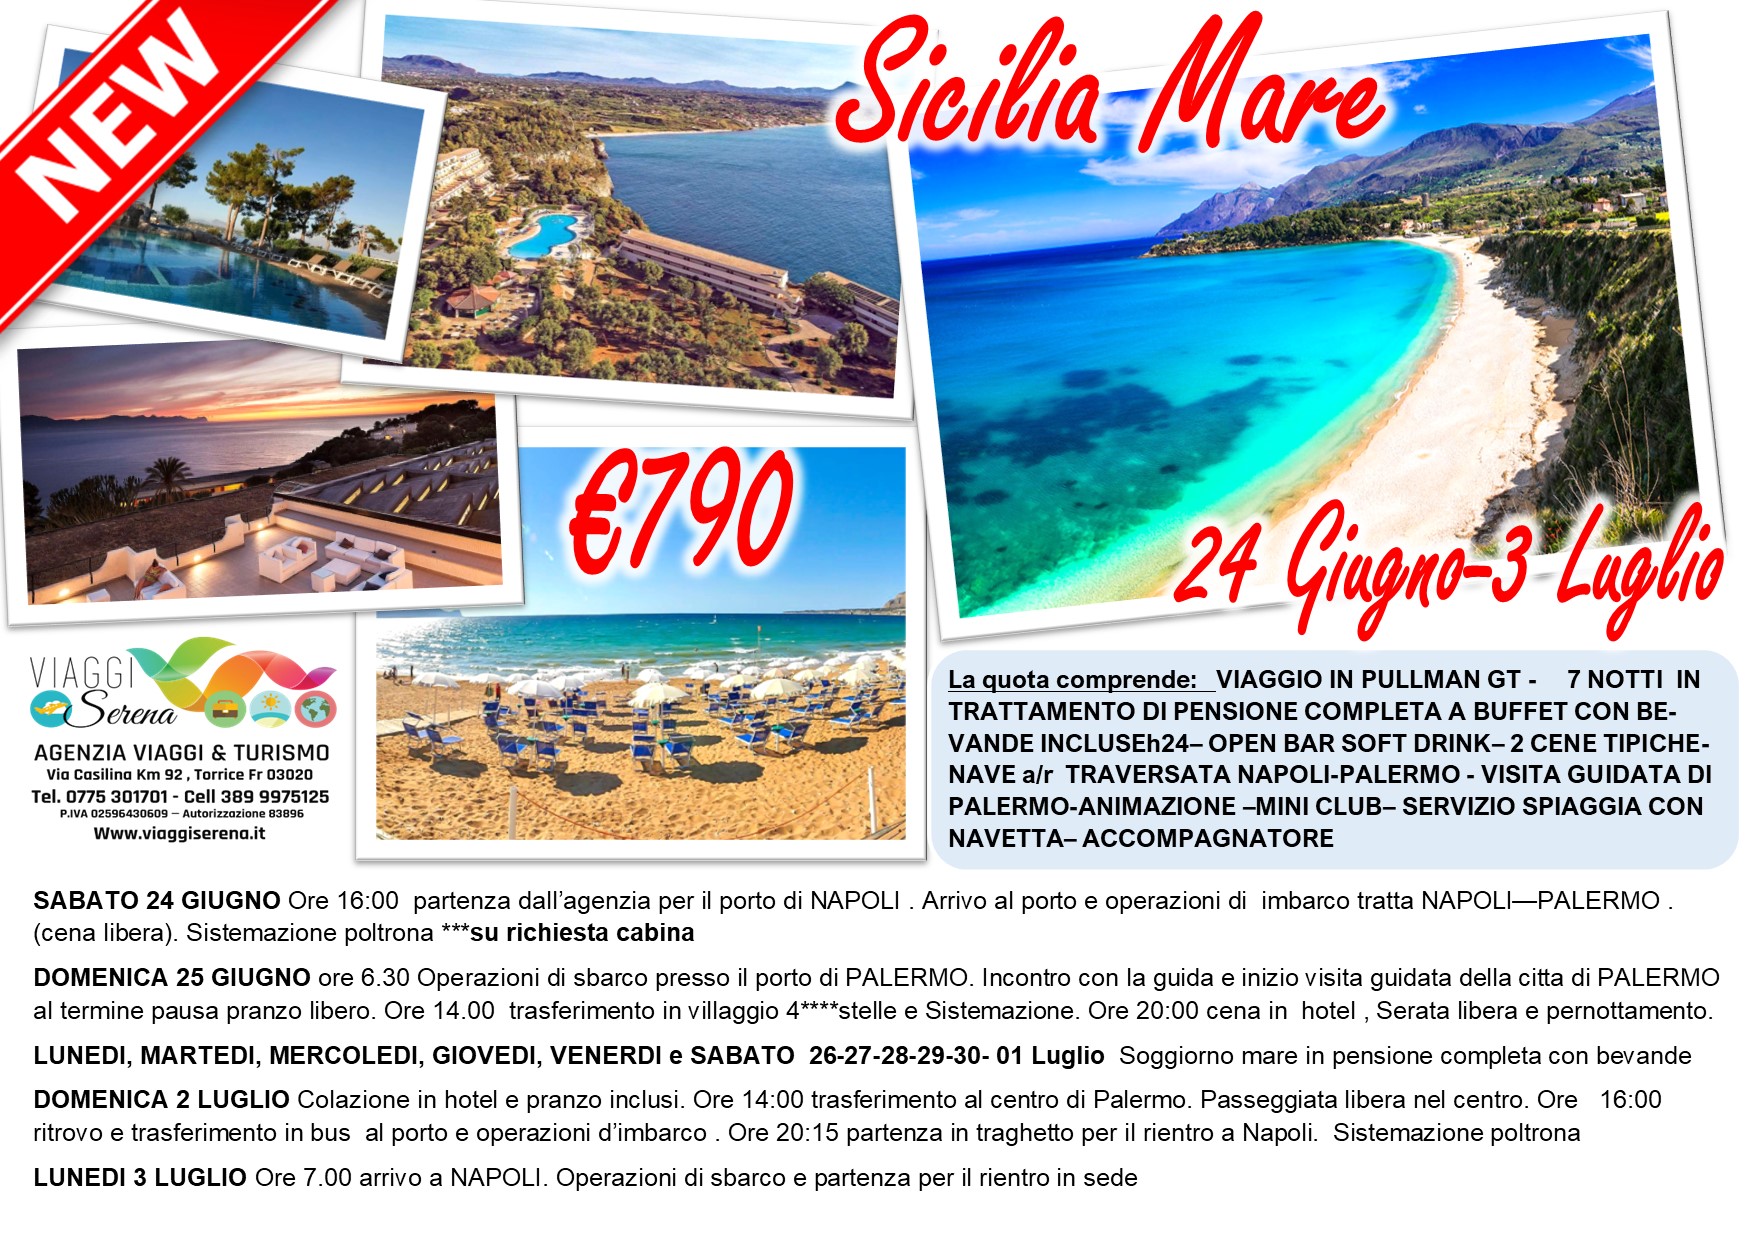 Viaggi di Gruppo: Soggiorno Mare Sicilia “all inclusive” 24 Giugno – 3 Luglio € 790,00